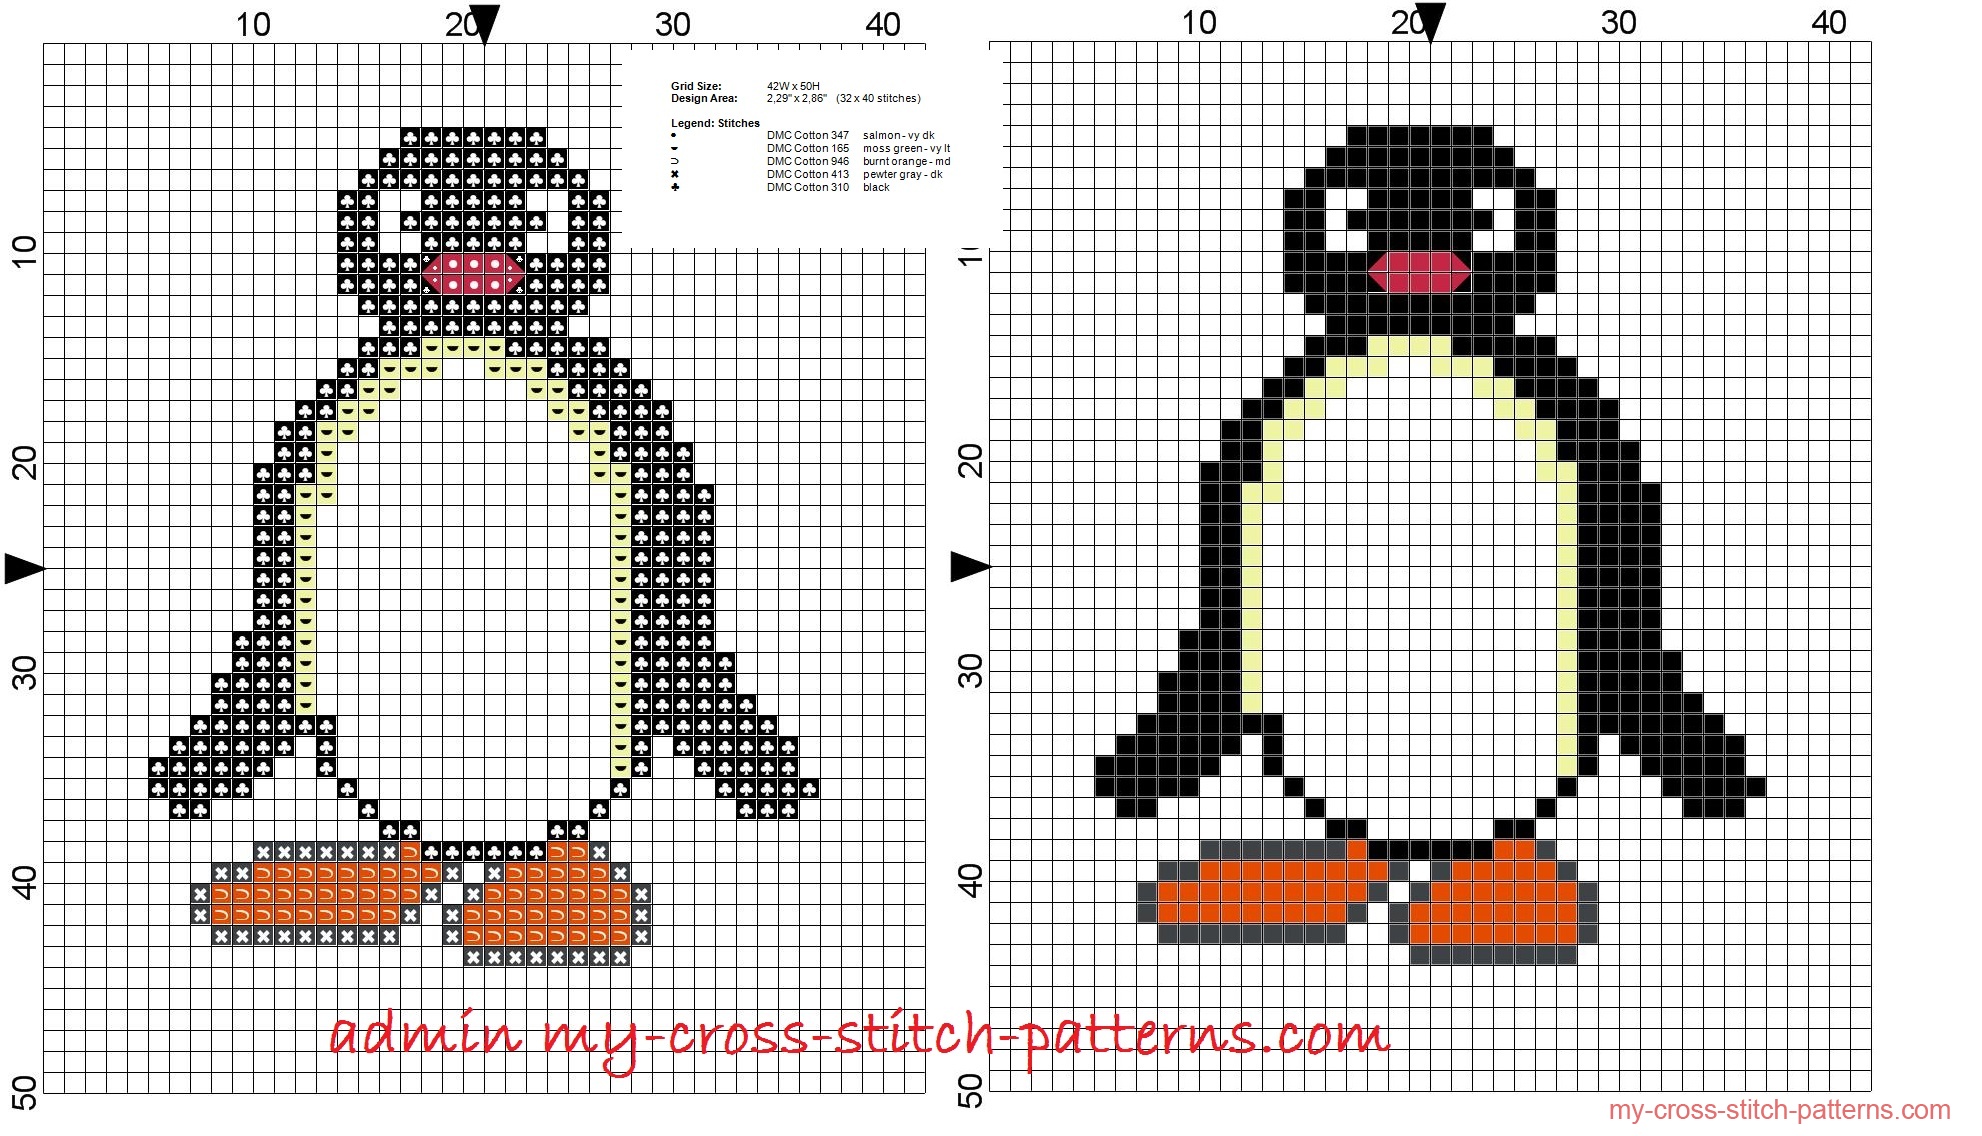 pingu_small_cross_stitch_pattern_32x40_stitches